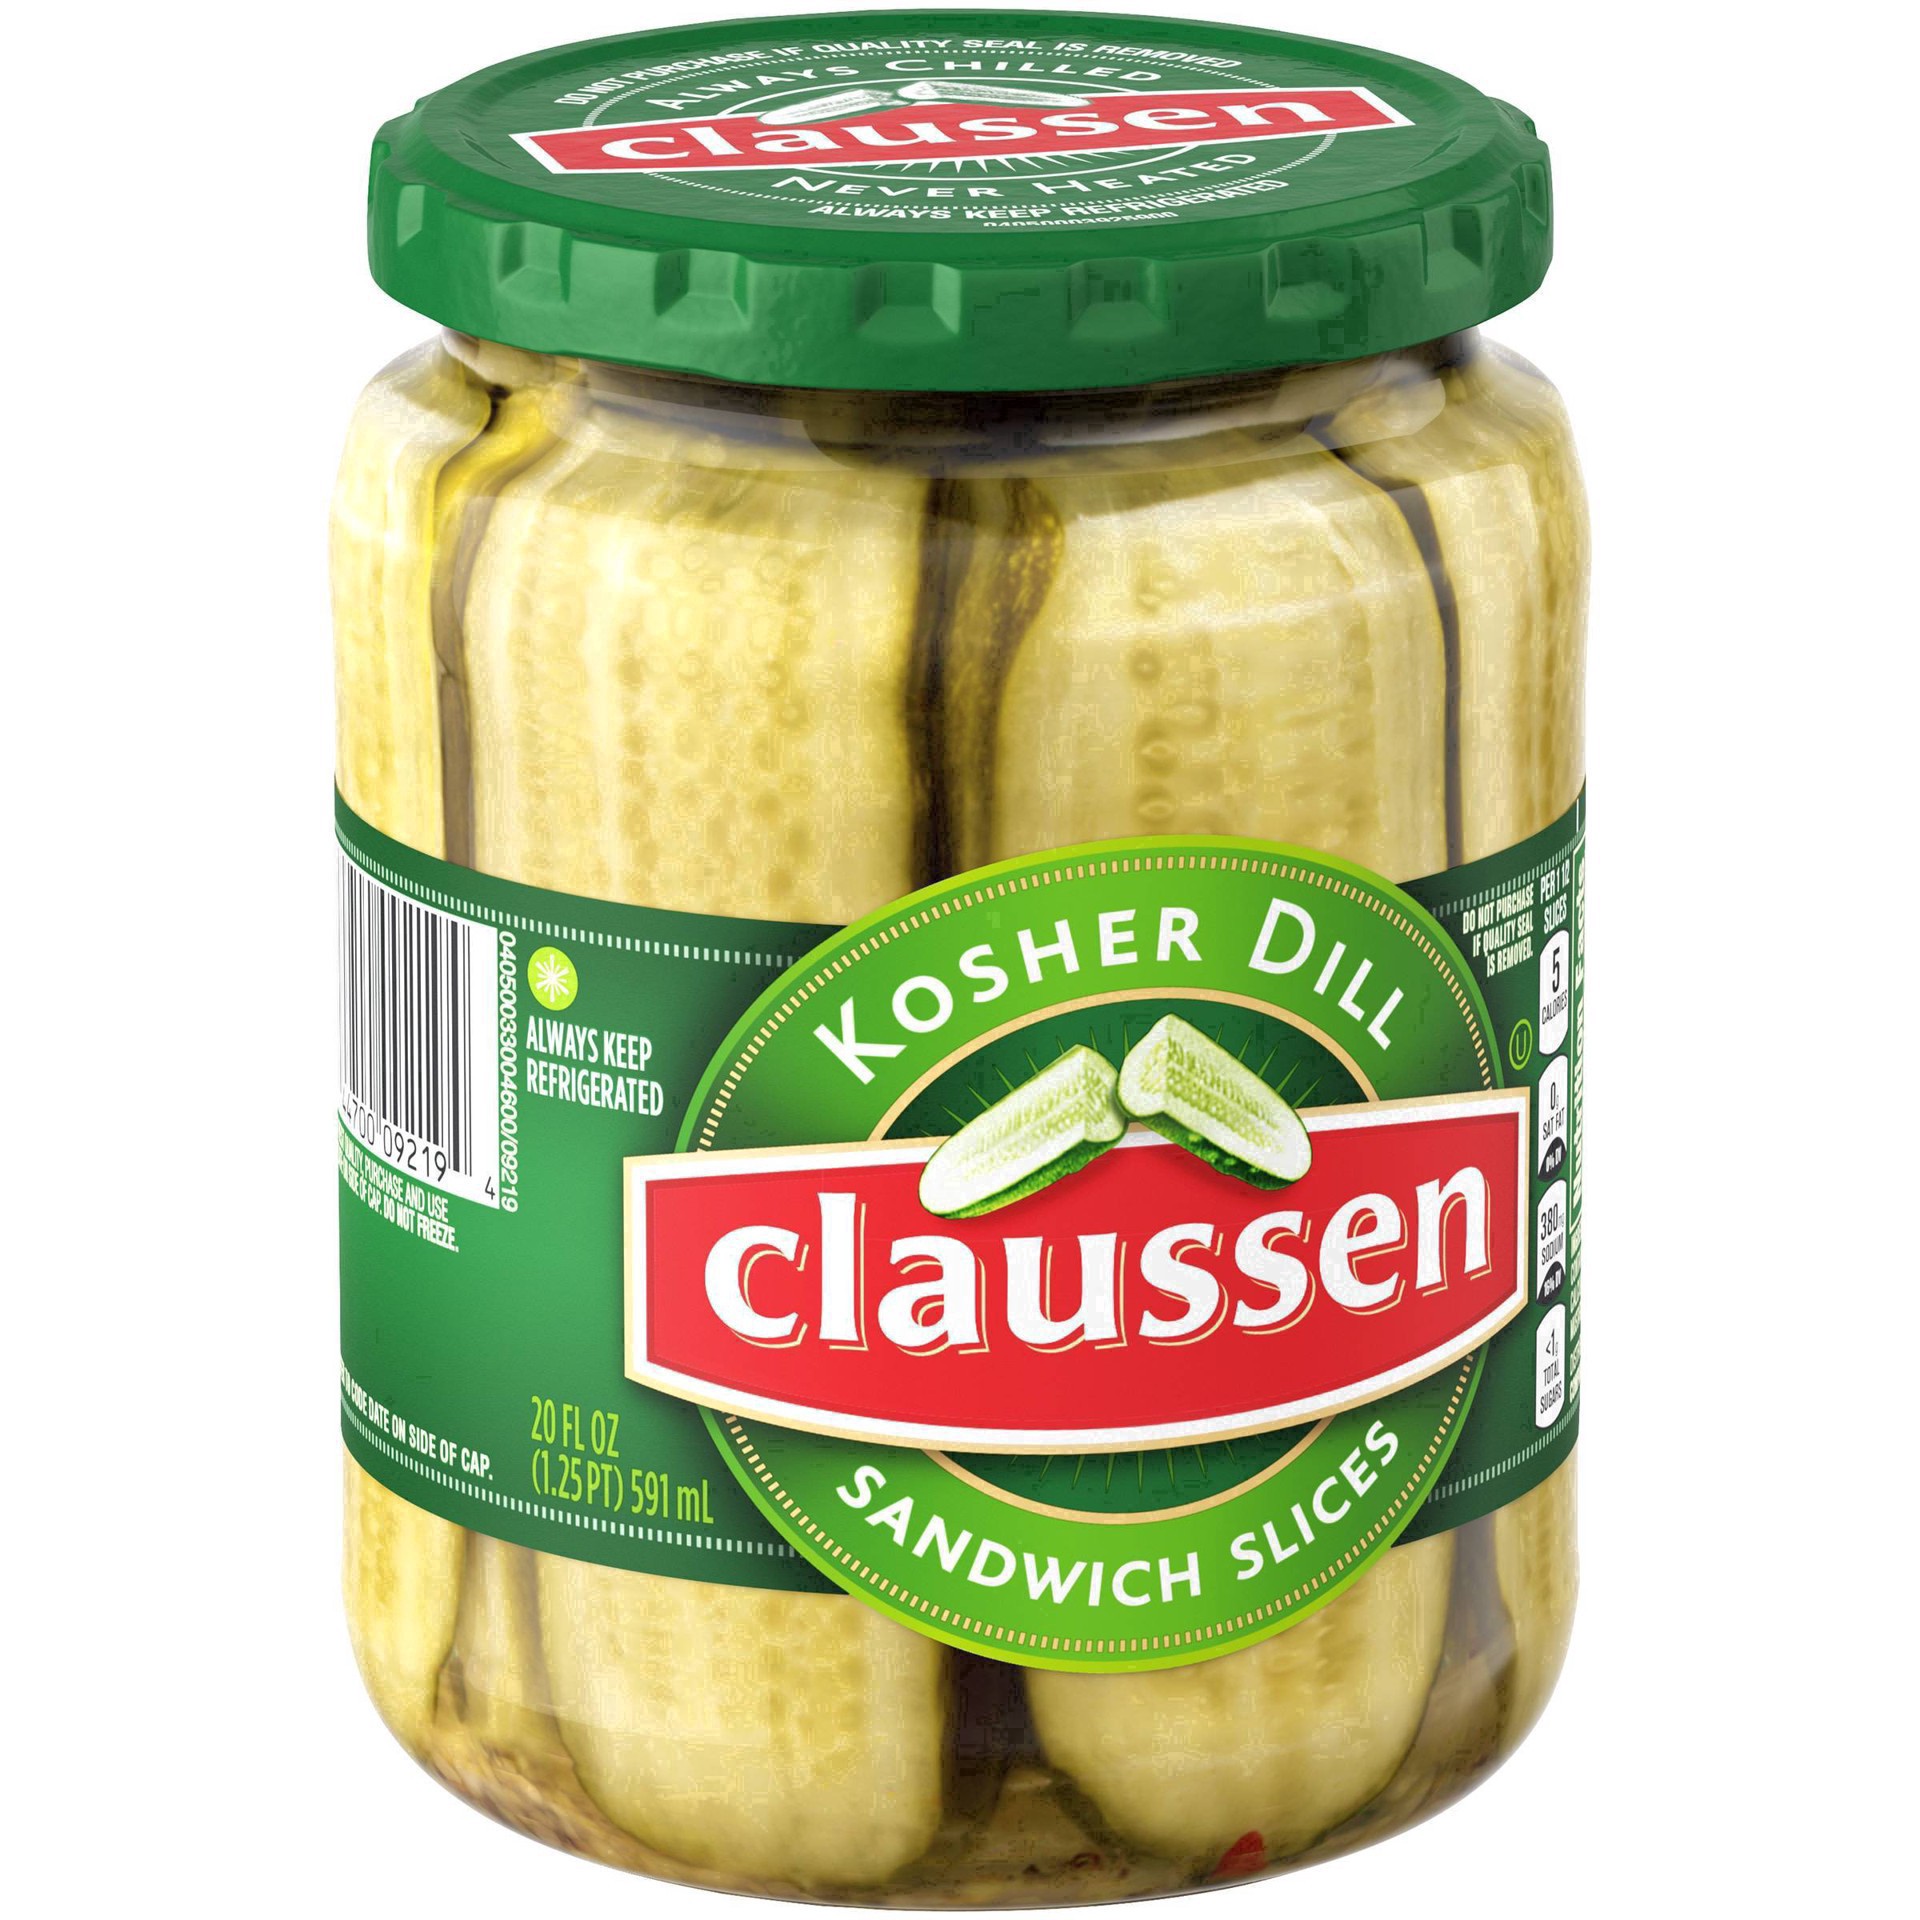 slide 36 of 144, Claussen Kosher Dill Pickle Sandwich Slices, 20 fl. oz. Jar, 20 fl oz